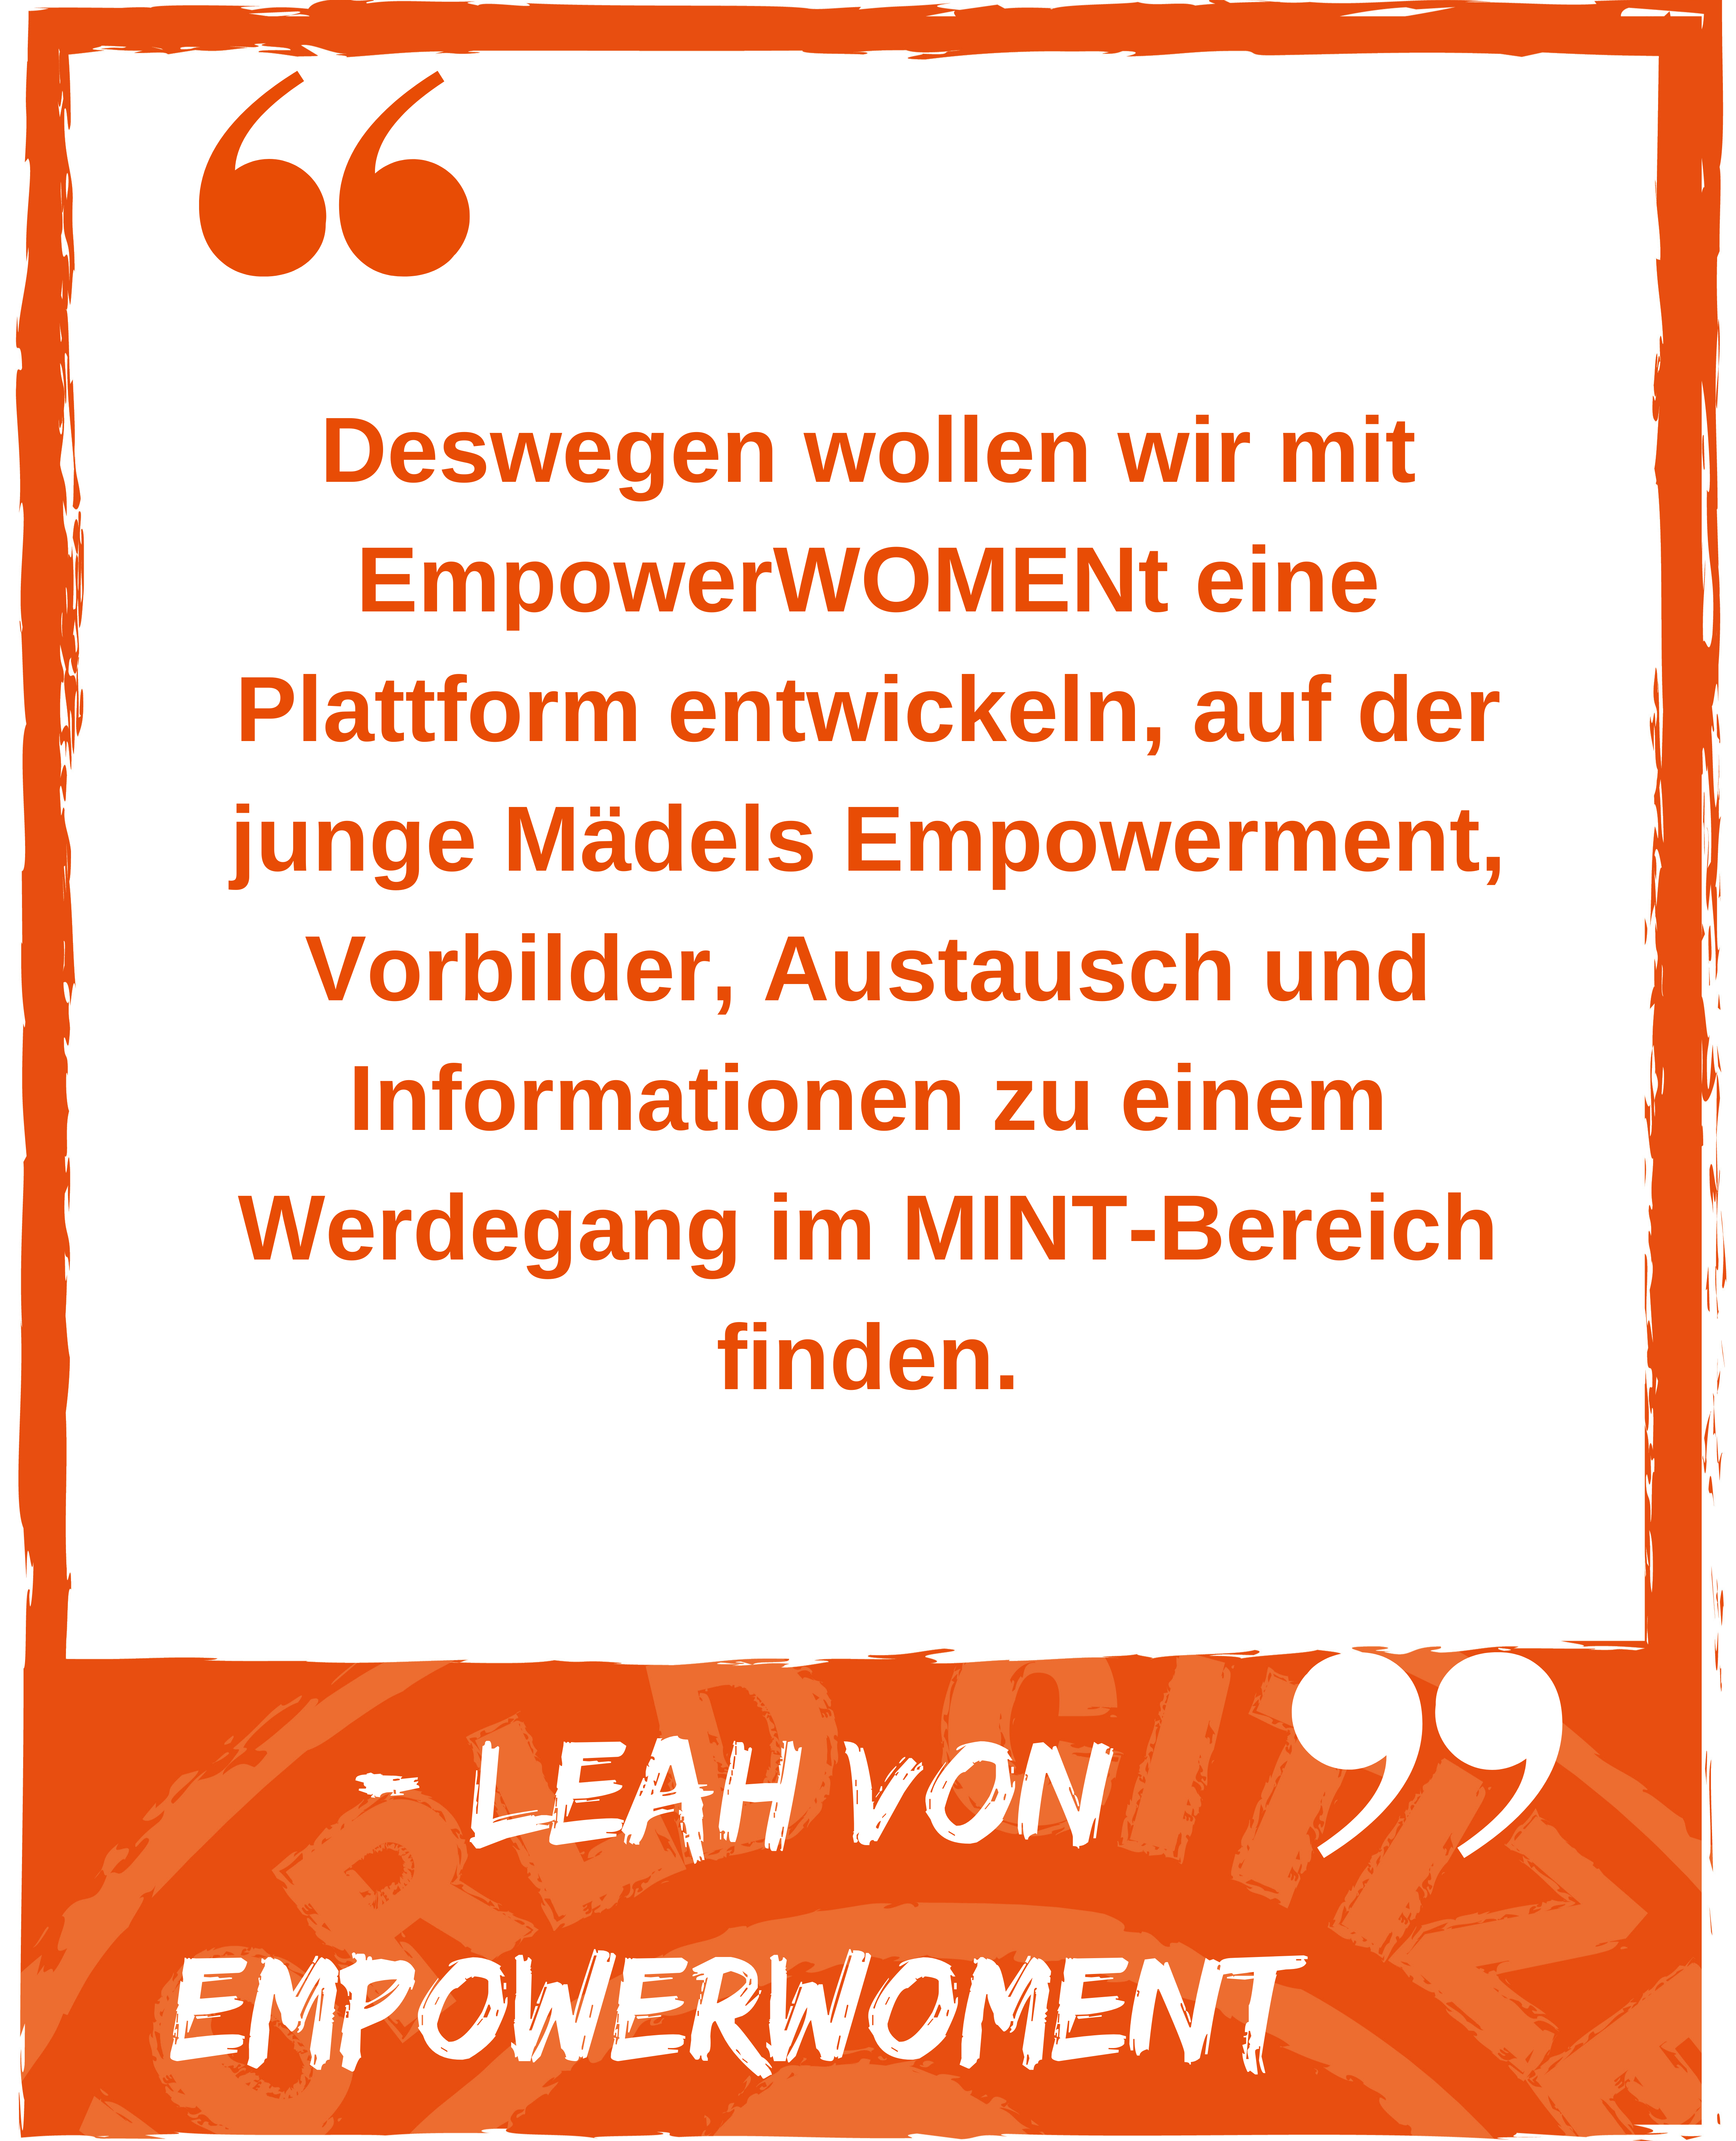 Zitat: Deswegen wollen wir mit EmpowerWOMENt eine Plattform entwickeln, auf der junge Mädels Empowerment, Vorbilder, Austausch und Informationen zu einem Werdegang im MINT-Bereich finden. Leah von Empowerwoment